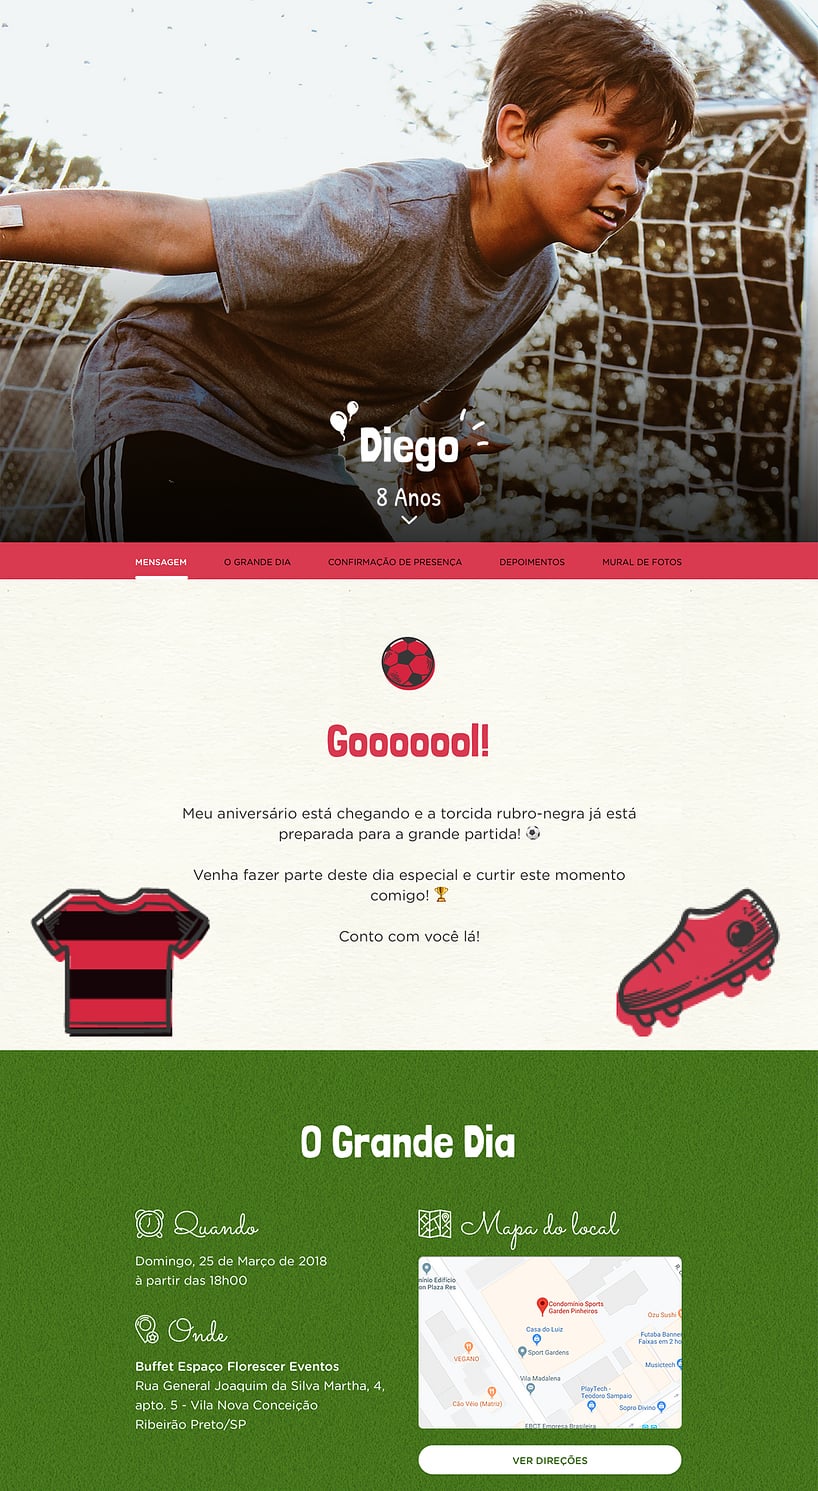 Criar convite de Flamengo online grátis